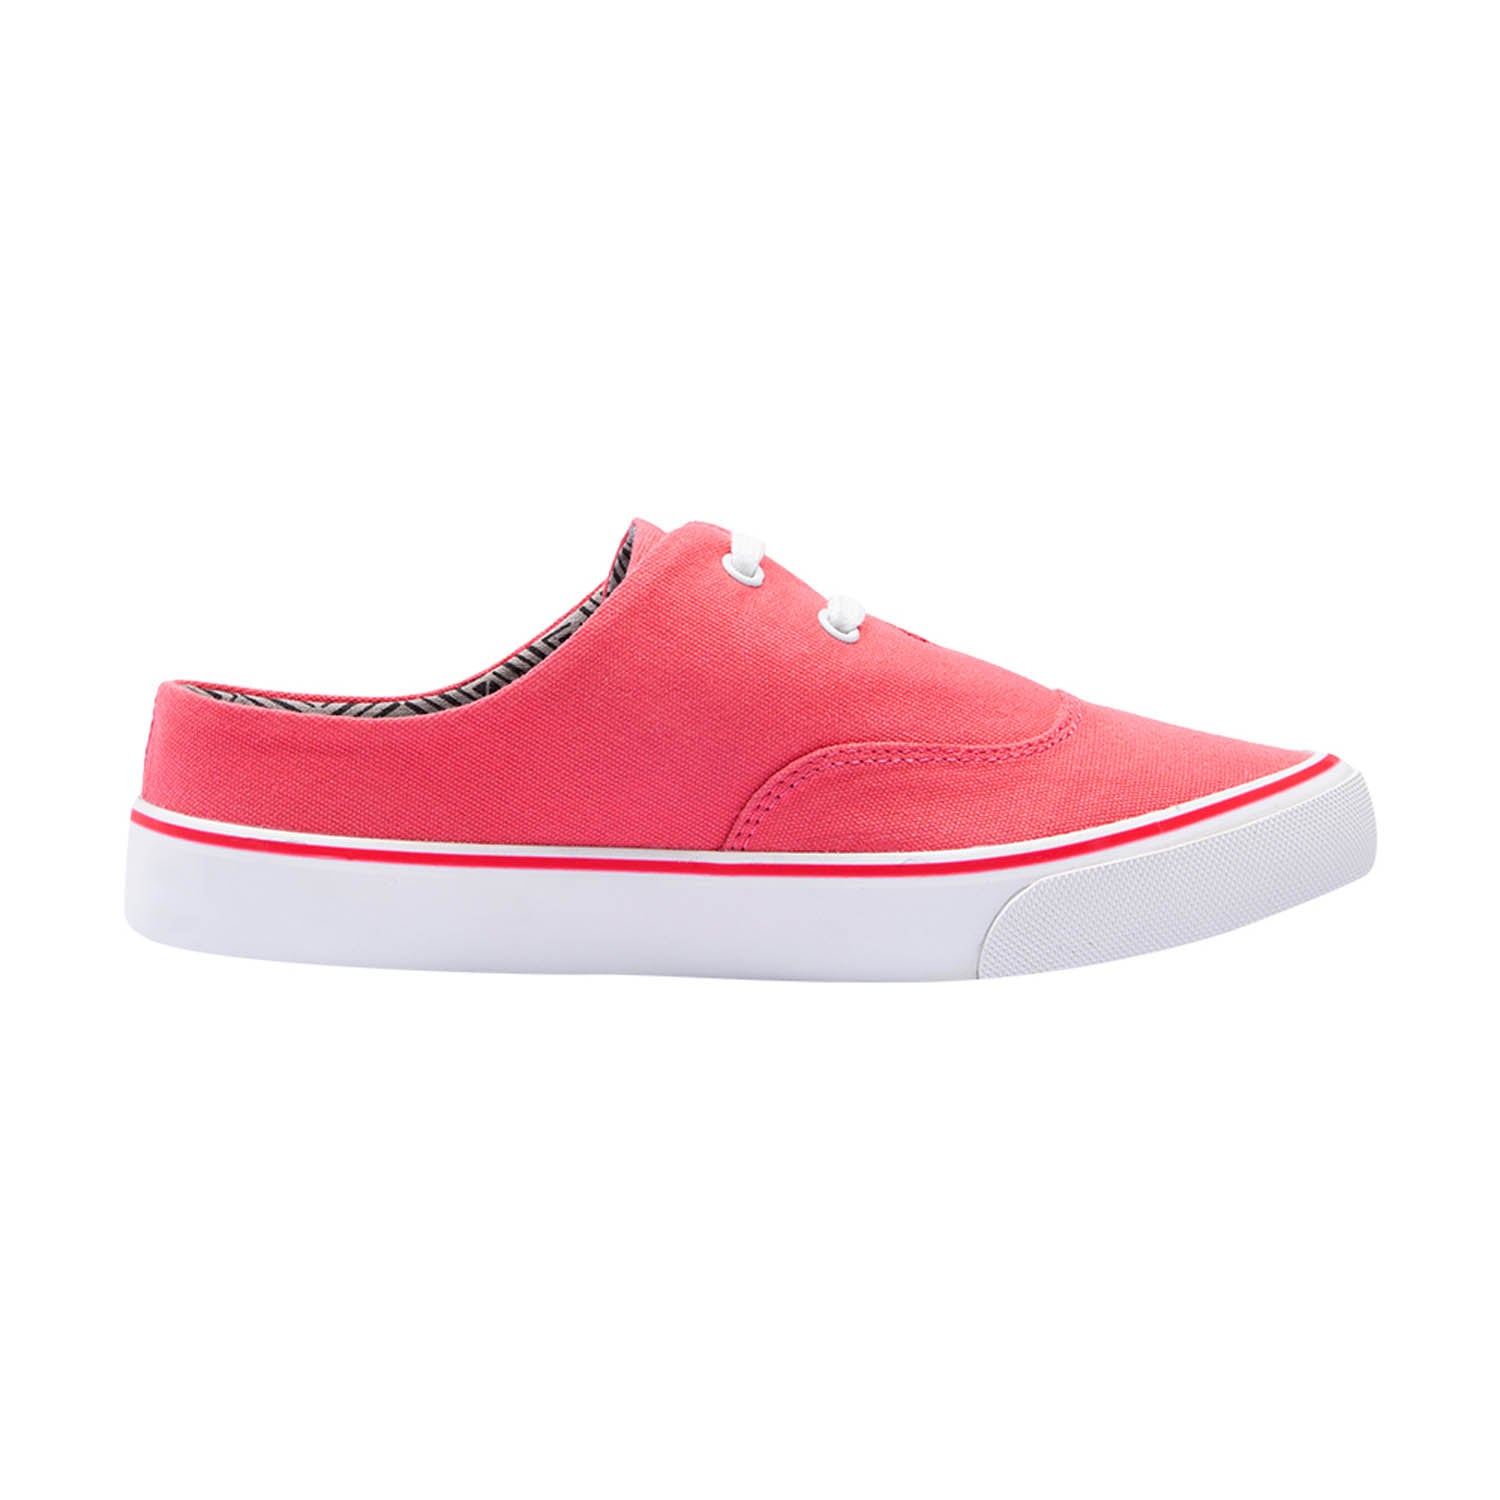 Eeken Sneakers For Women (Red)